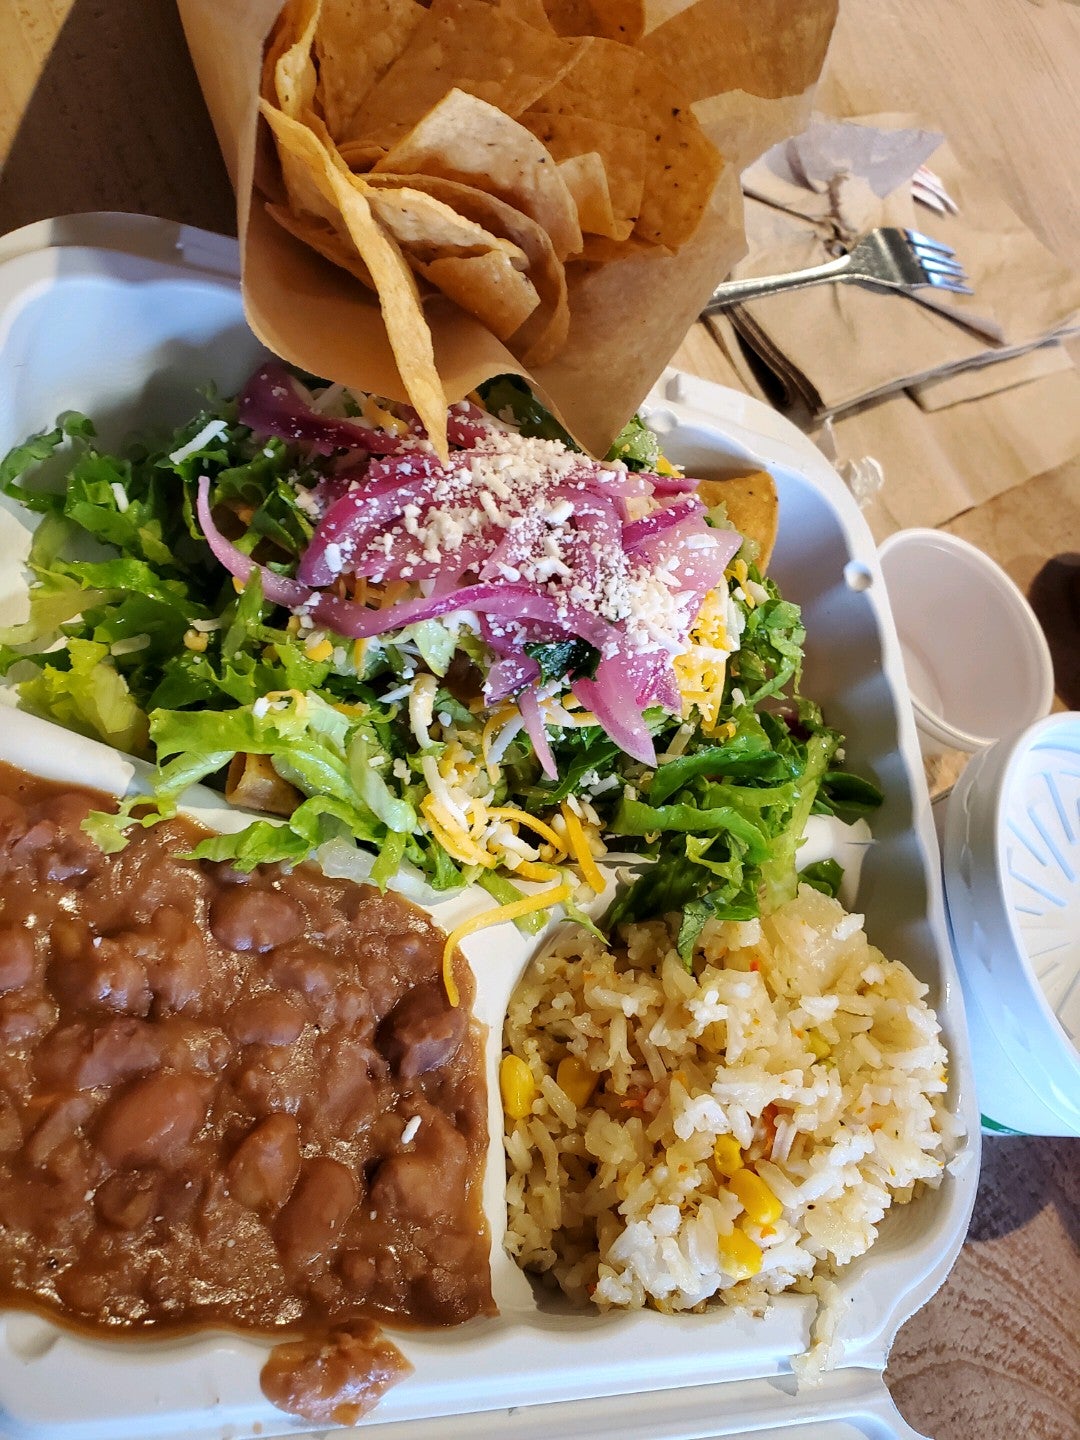 San Ramon – Dos Coyotes Border Cafe